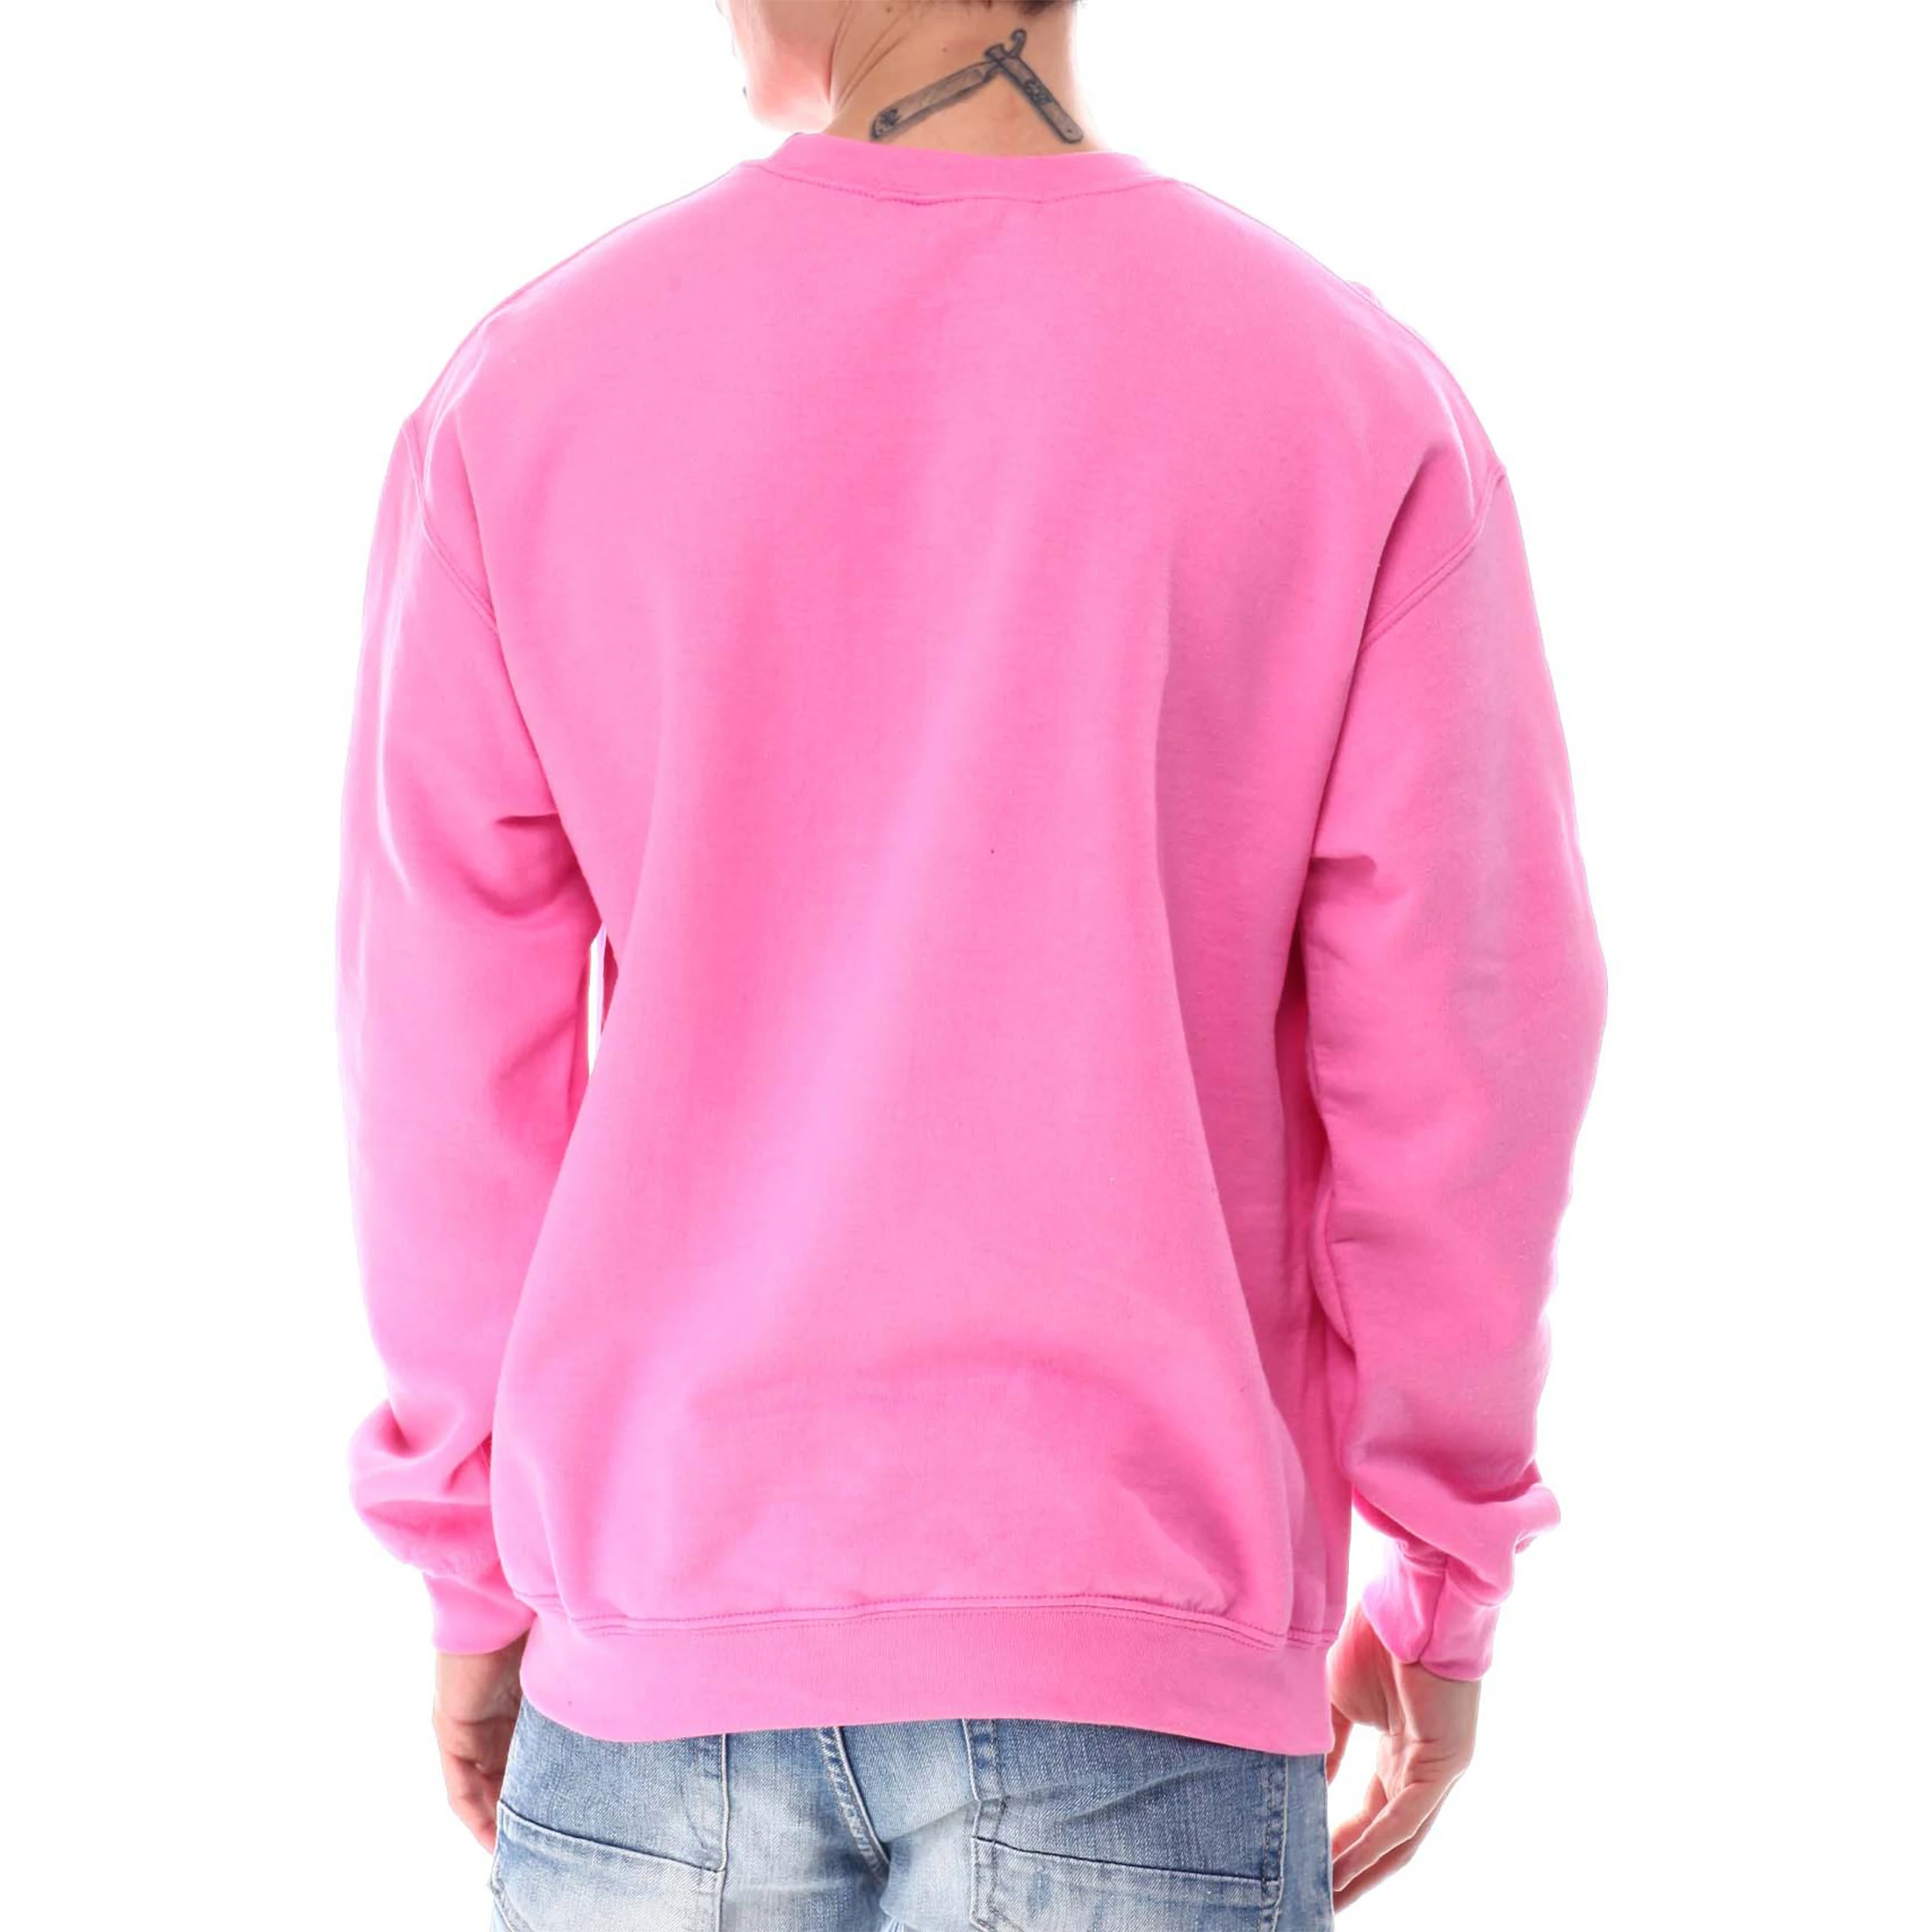 OEM mens Hoodie Sweatshirt 100% Cotton Pink Long Sleeve custom Printed logo Pullover hoodies